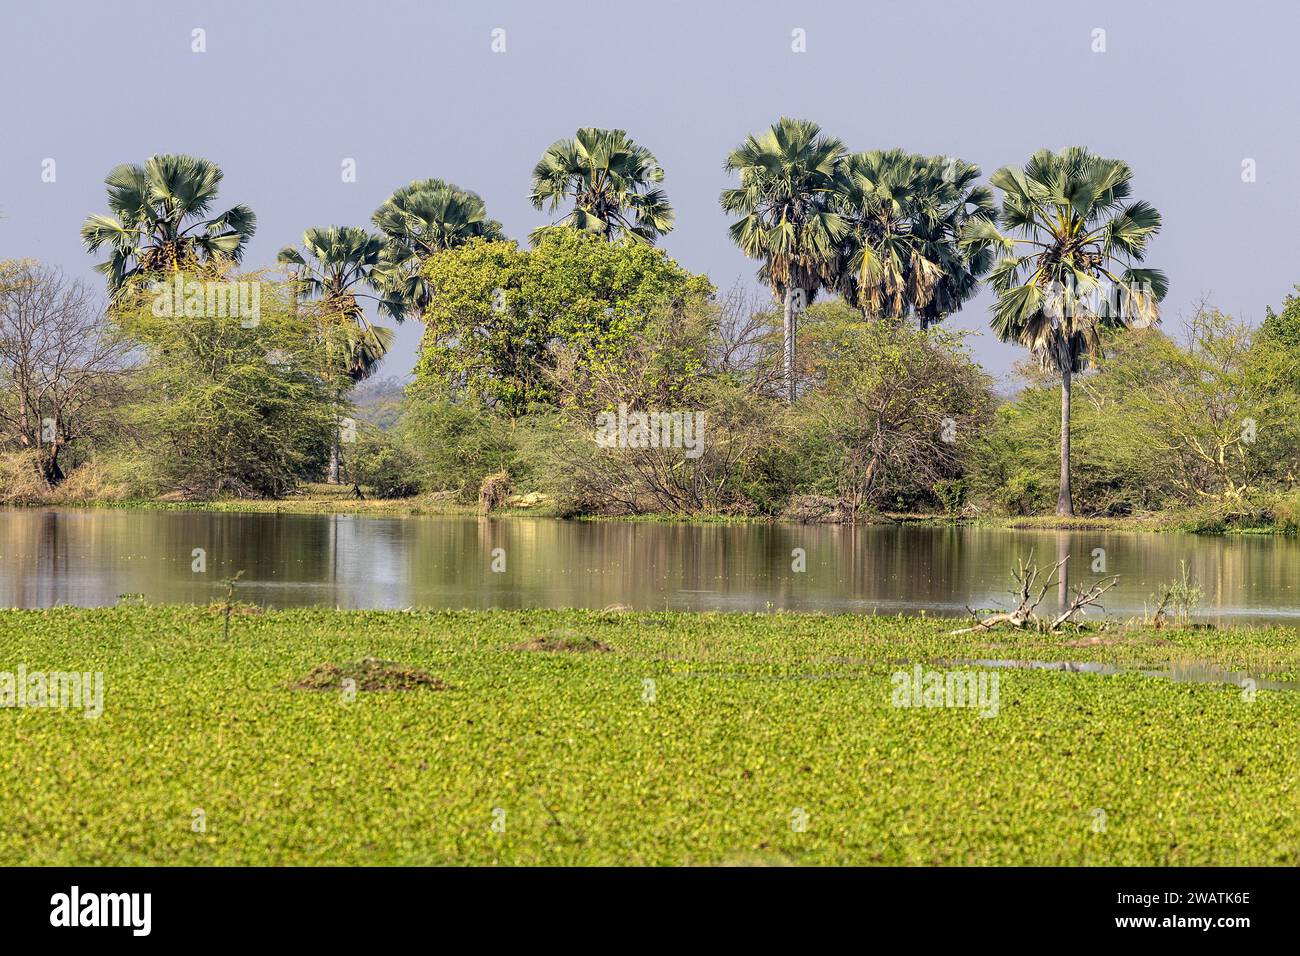 Pianura alluvionale, fiume Shire, palme, Giacinto d'acqua, Parco Nazionale Liwonde, Malawi Foto Stock